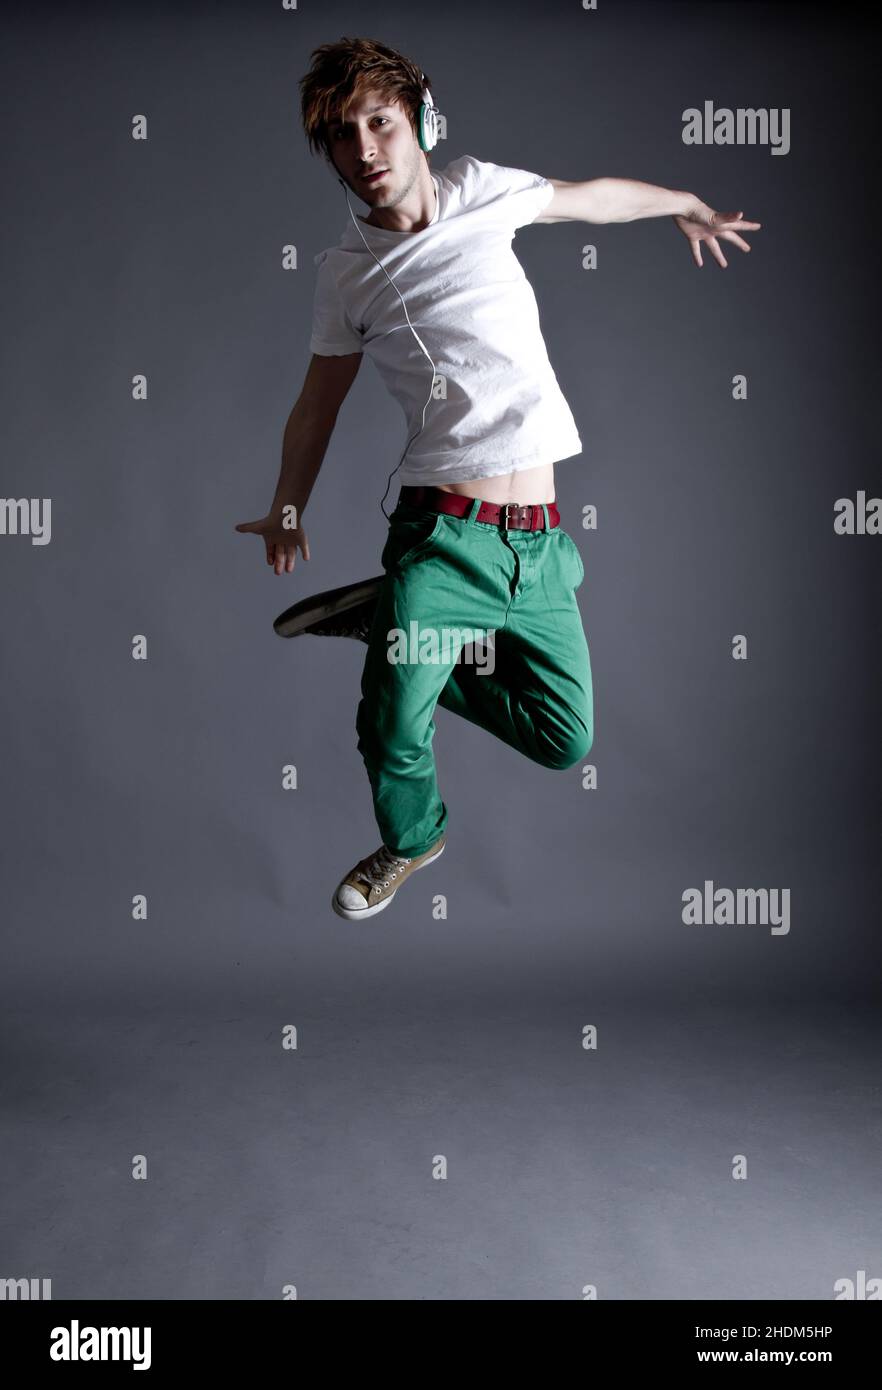 giovane uomo, salto, ballerino, ragazzo, uomo, uomini, giovani, jumper, jumping, ballerini Foto Stock